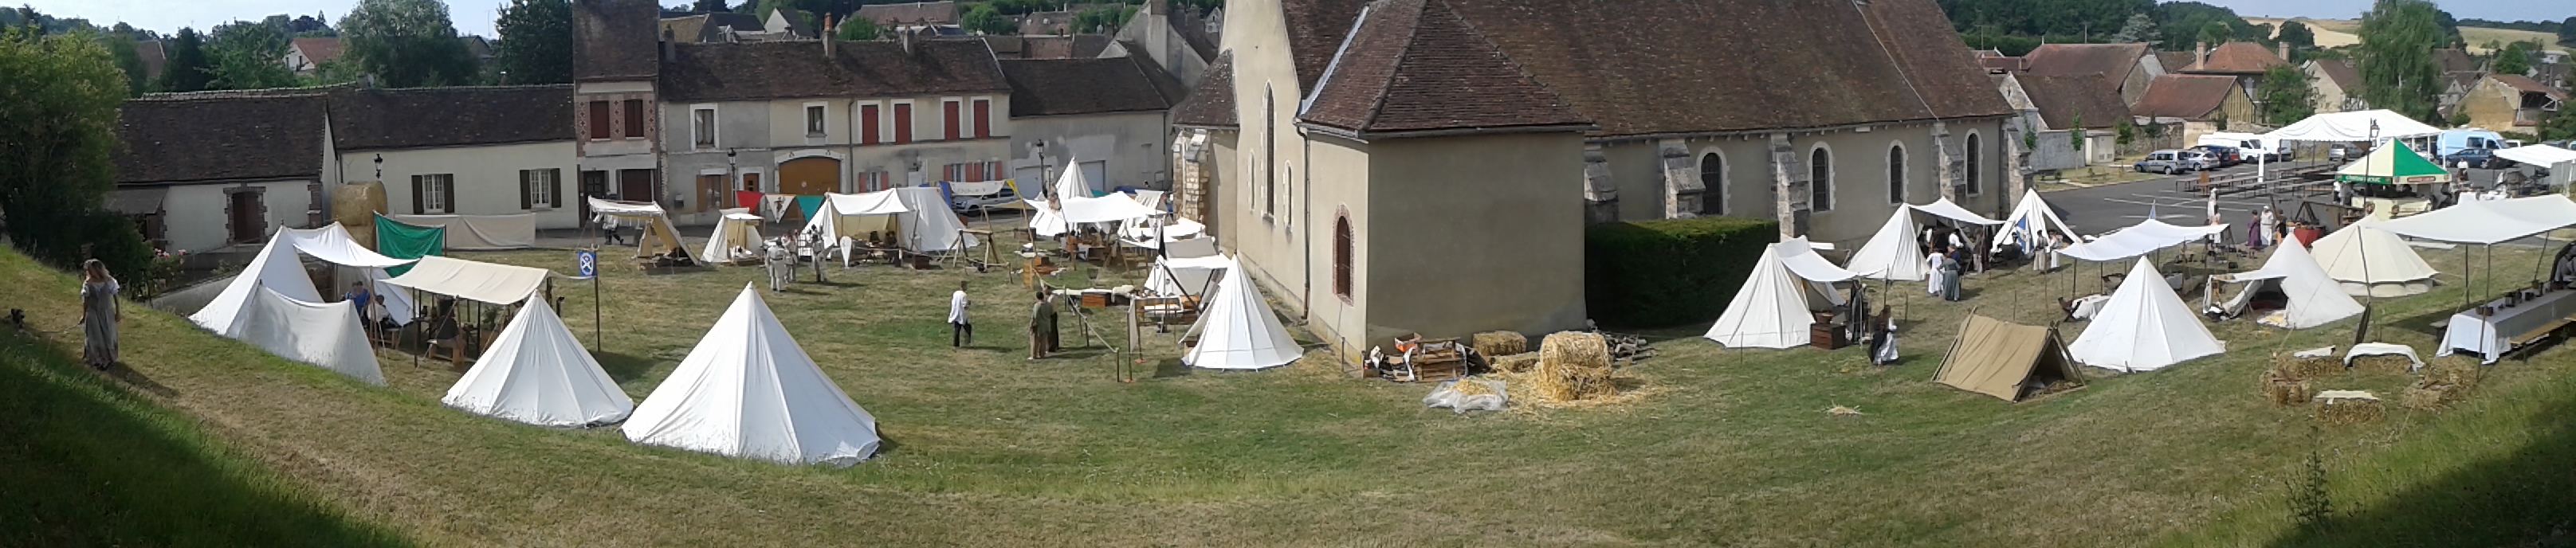 Les campements médiévaux s'installe autour de l'église de Cerisiers